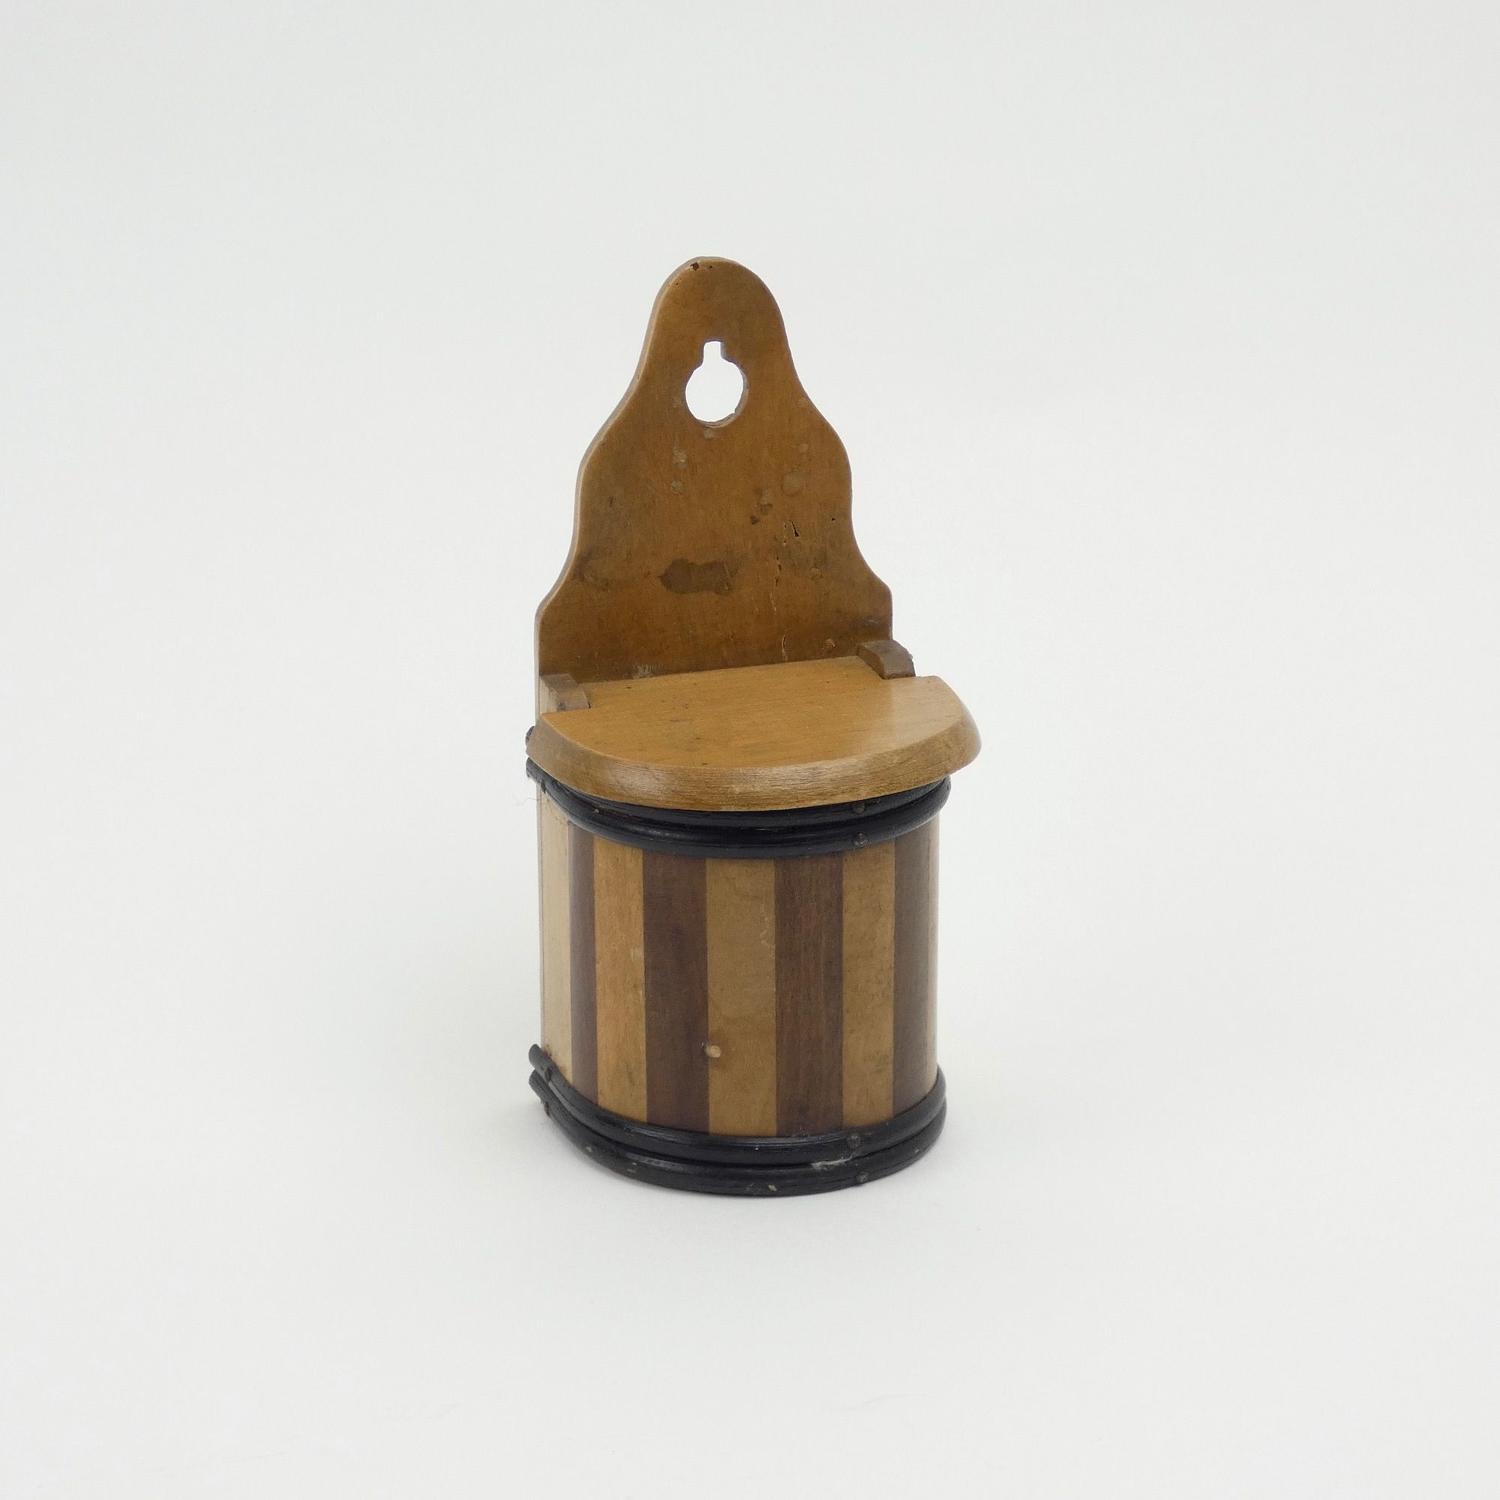 Miniature wooden salt box